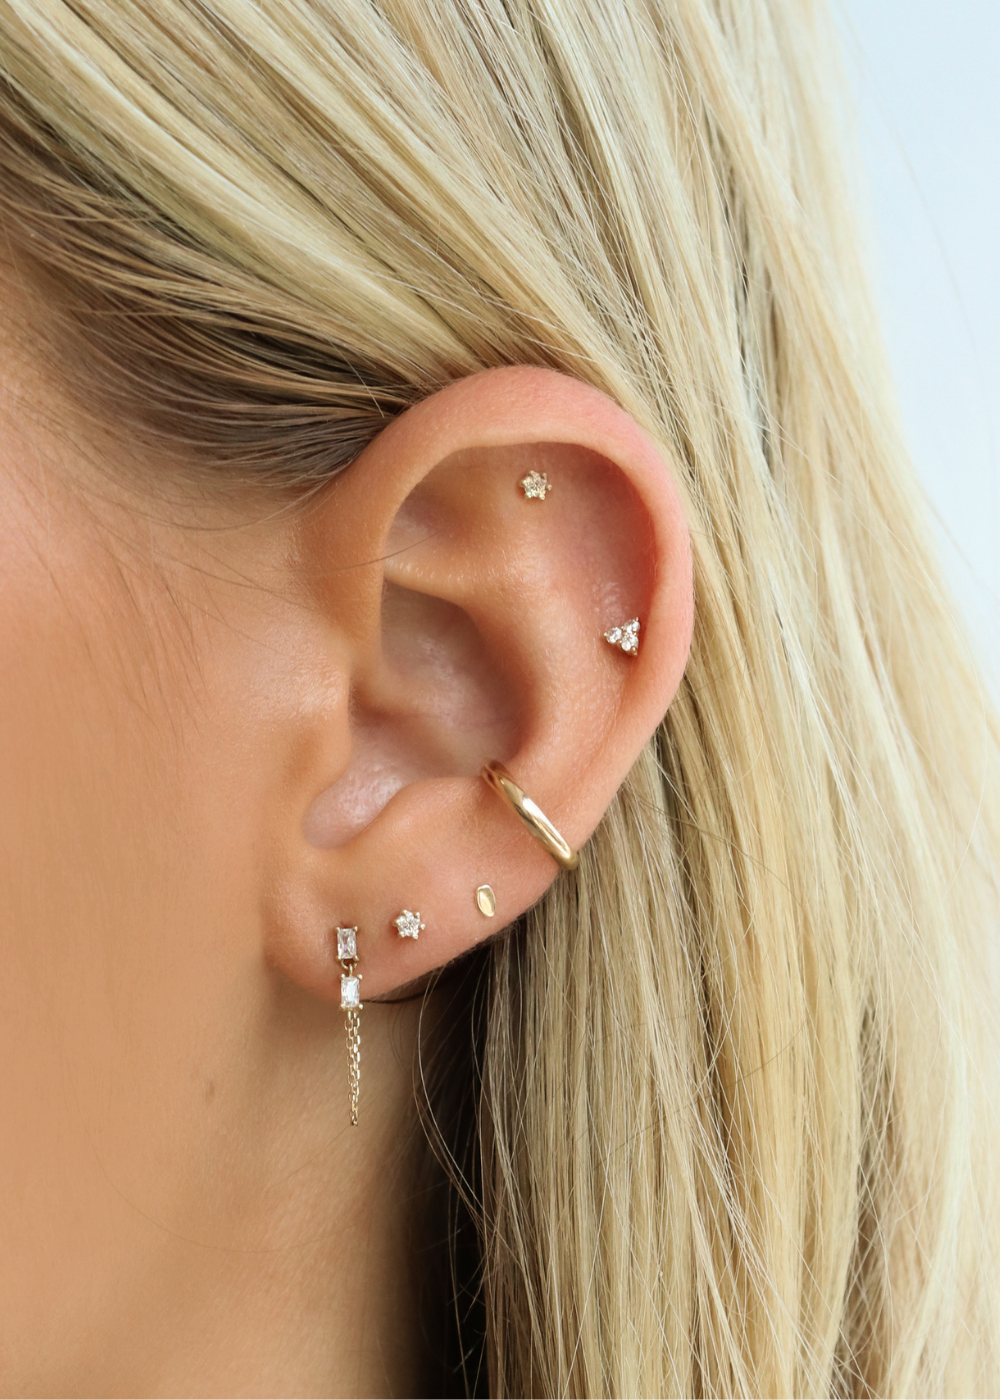 Ear Piercings - Piercings Works